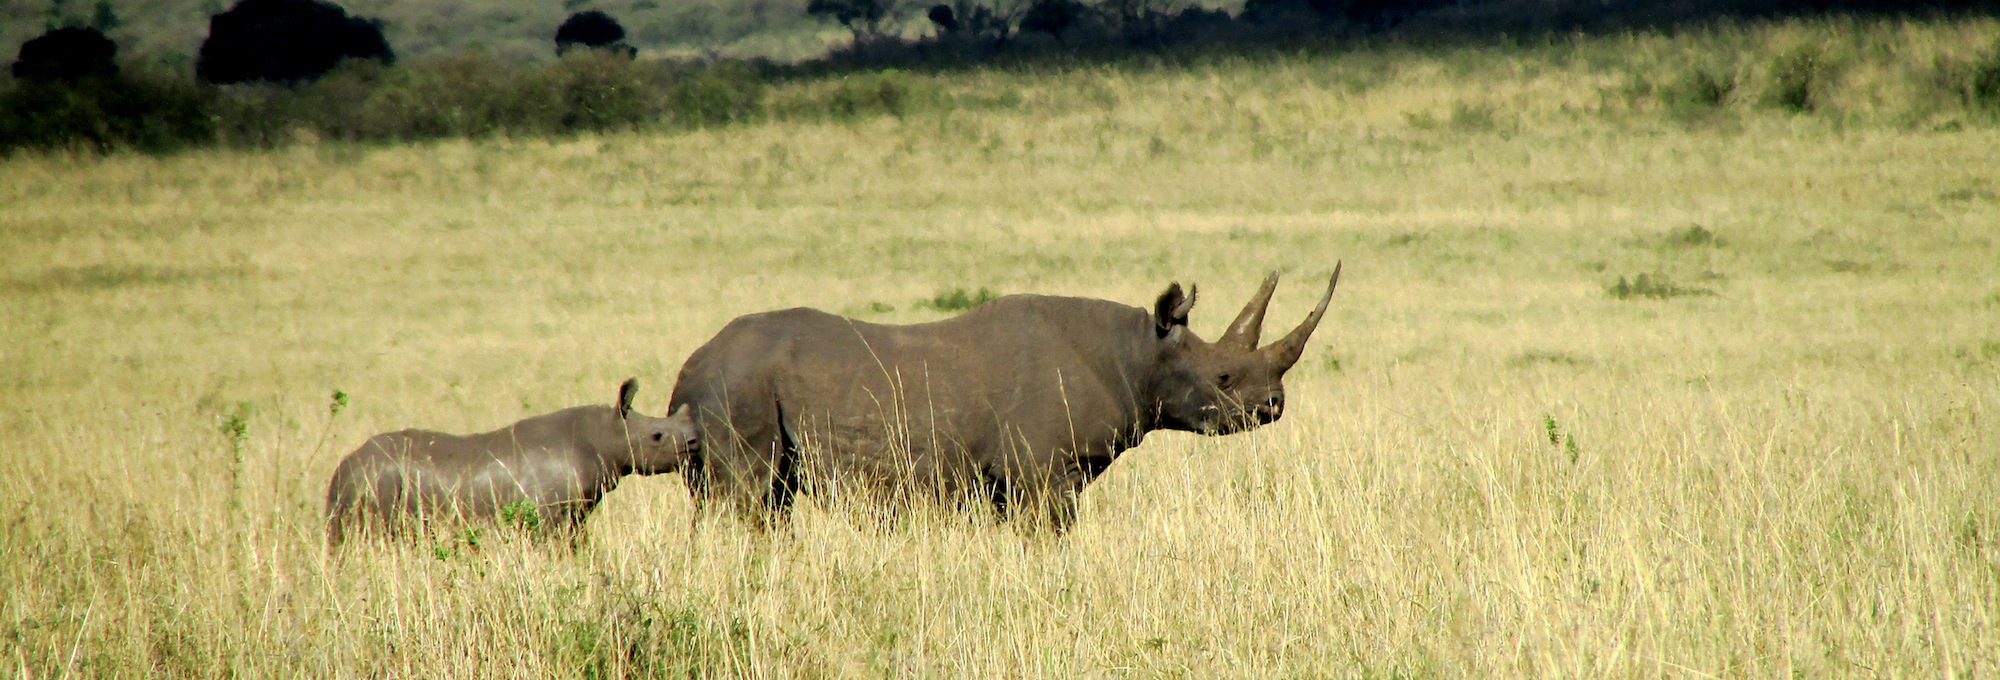 …la familia de rinocerontes cruzando las extensas llanuras…